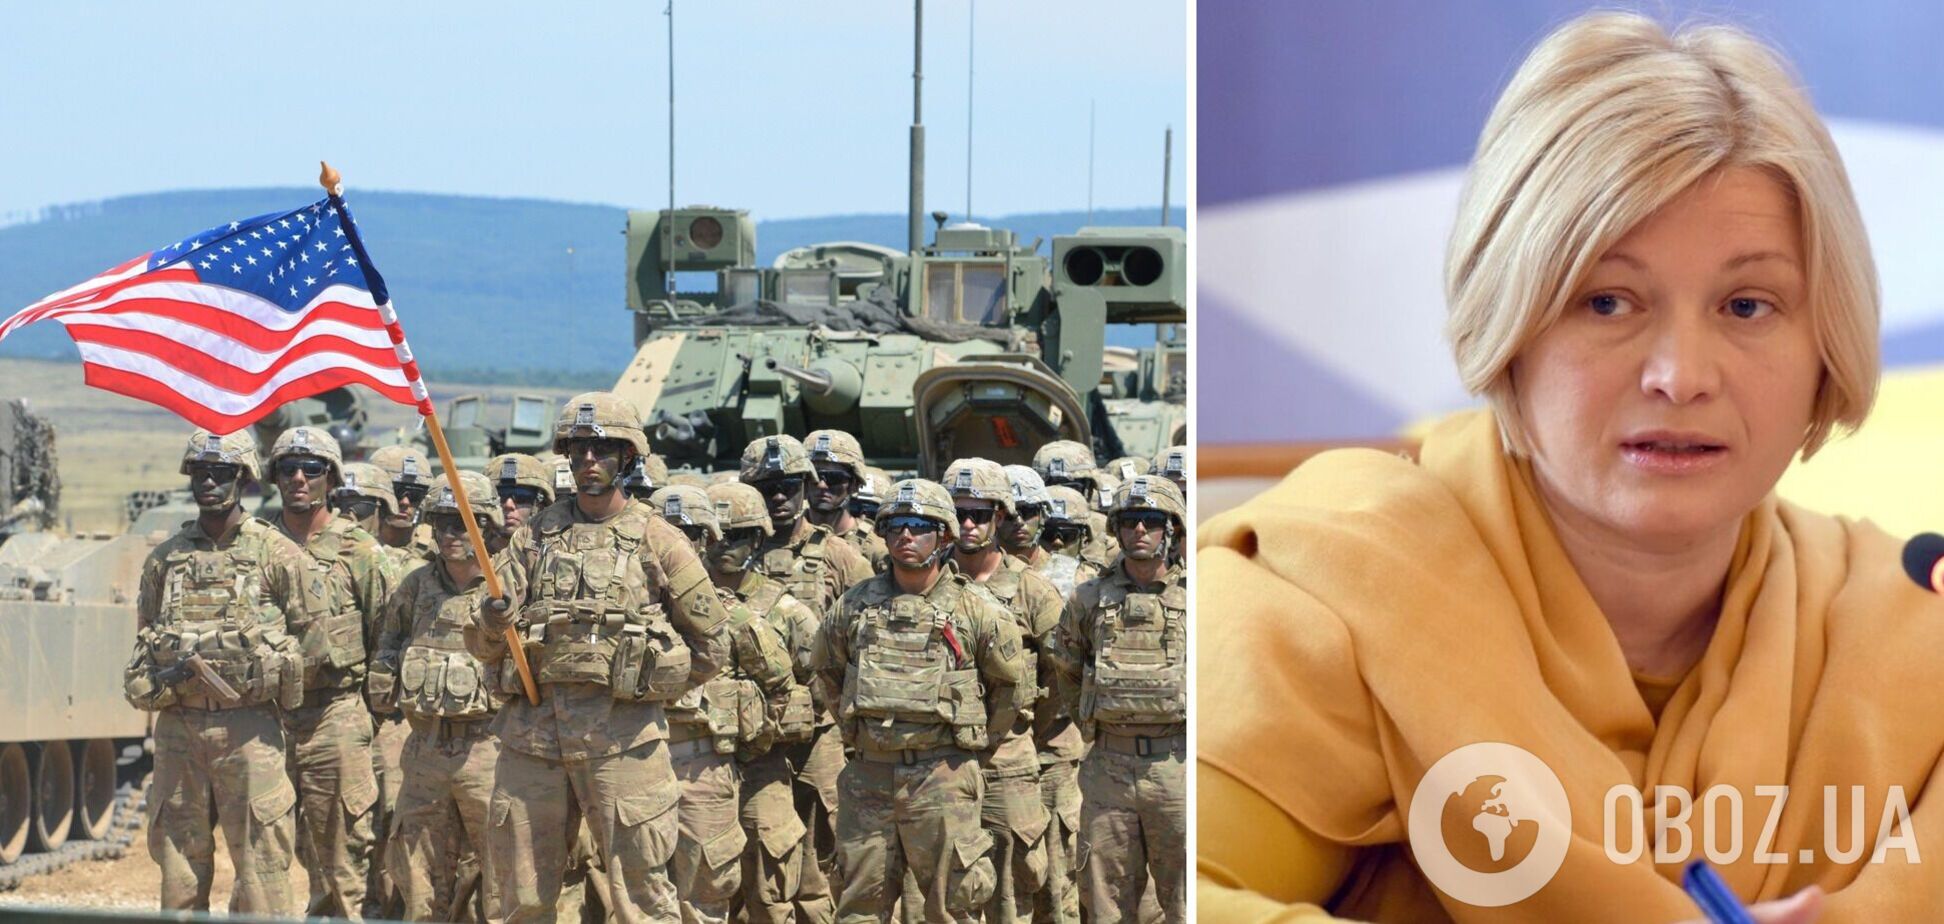 Воювати за Україну буде тільки Україна: Геращенко пояснила позицію США щодо надання військової допомоги